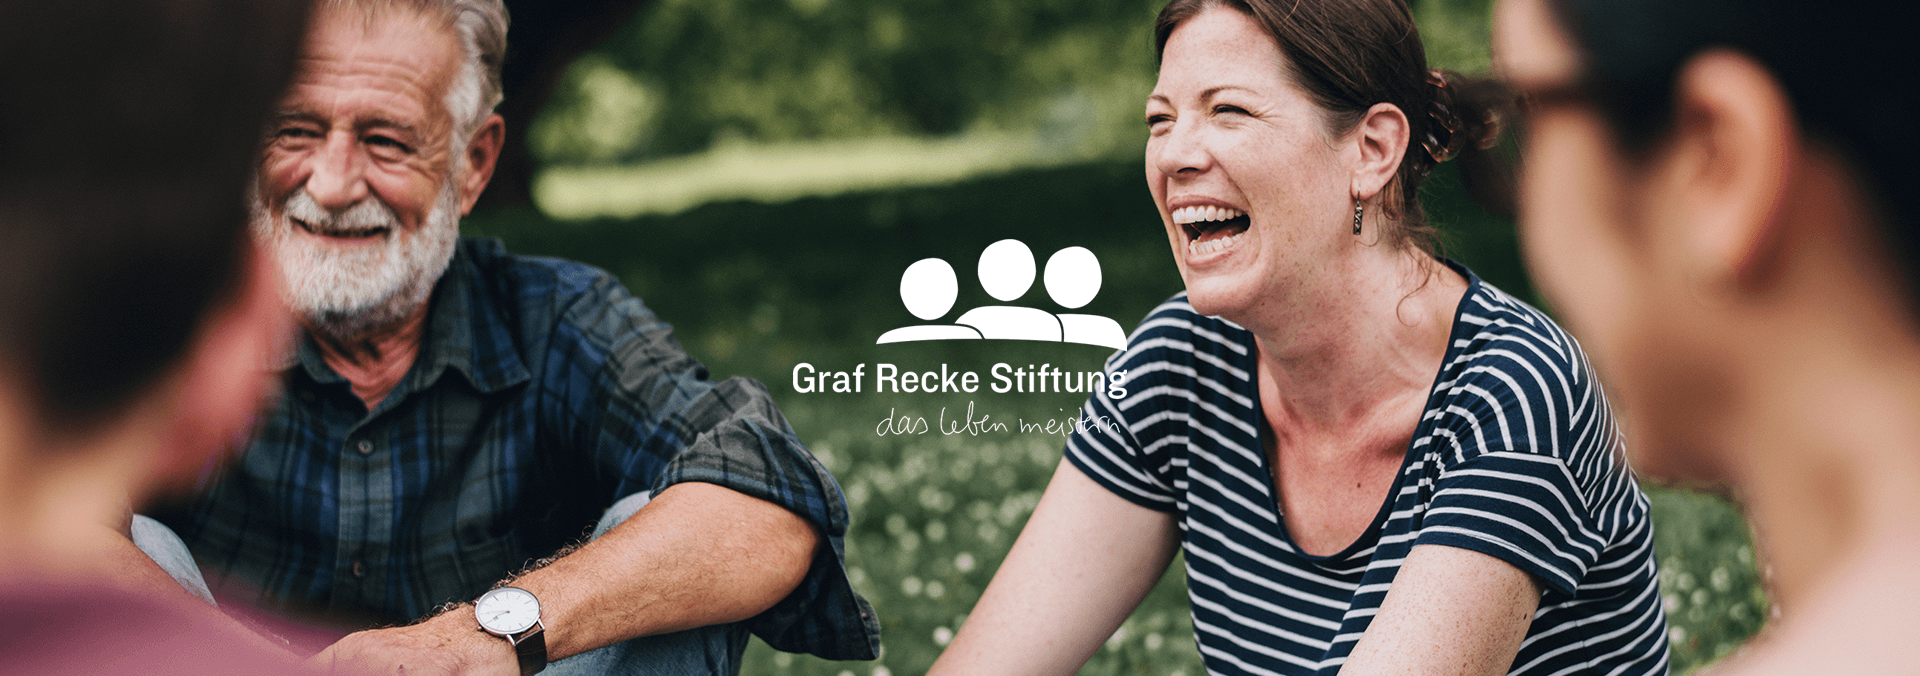 Marketing für Graf Recke Stiftung Header